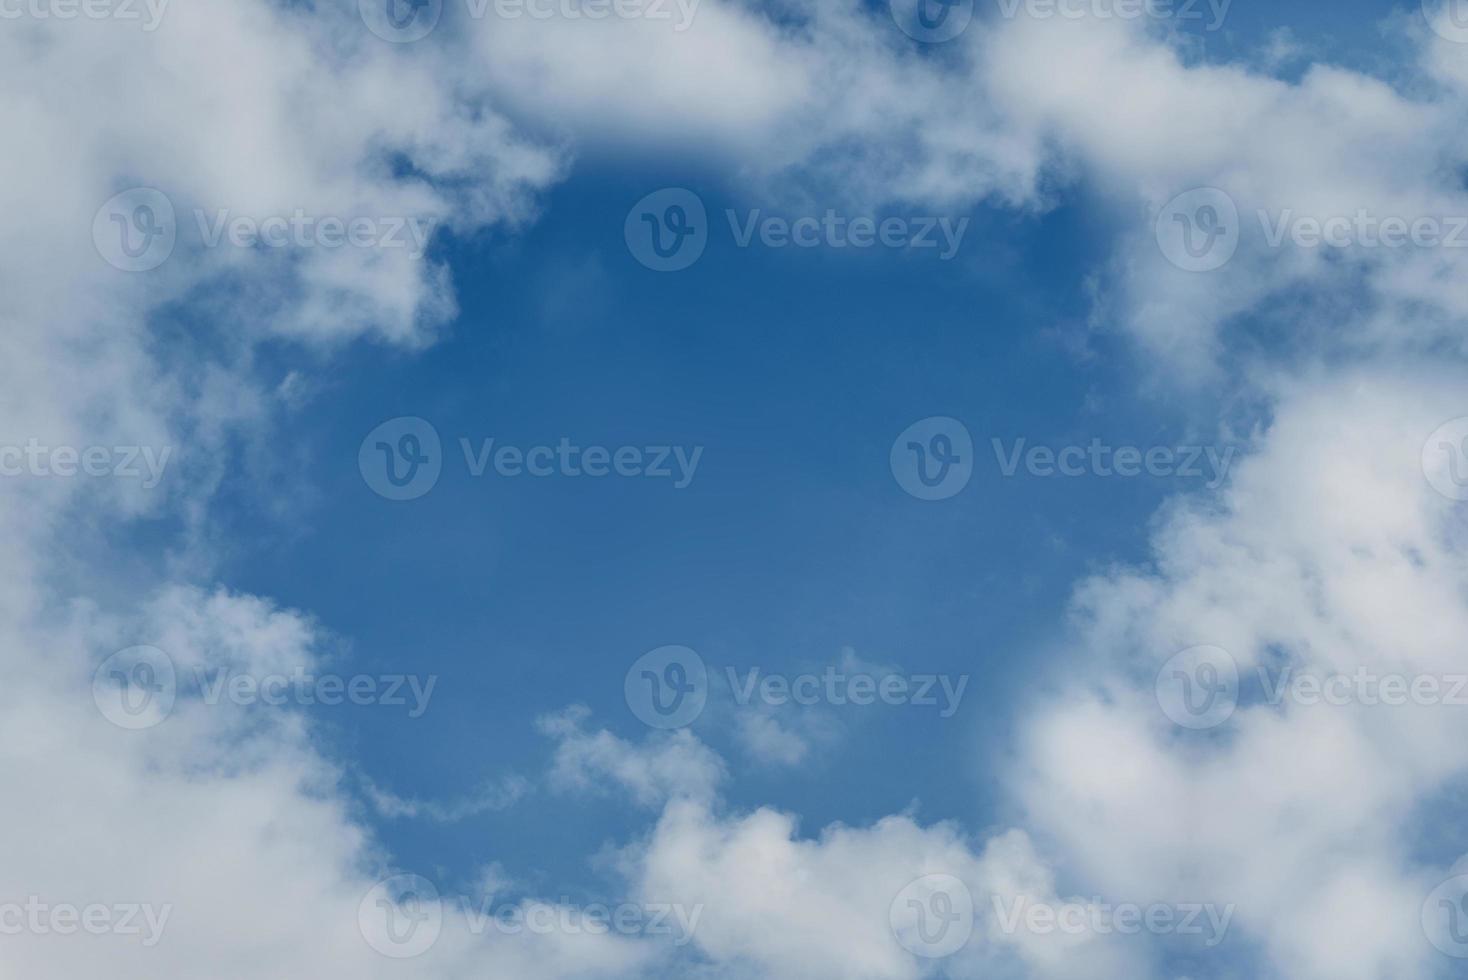 achtergrond blauwe lucht en witte wolken rond. foto met kopie ruimte.